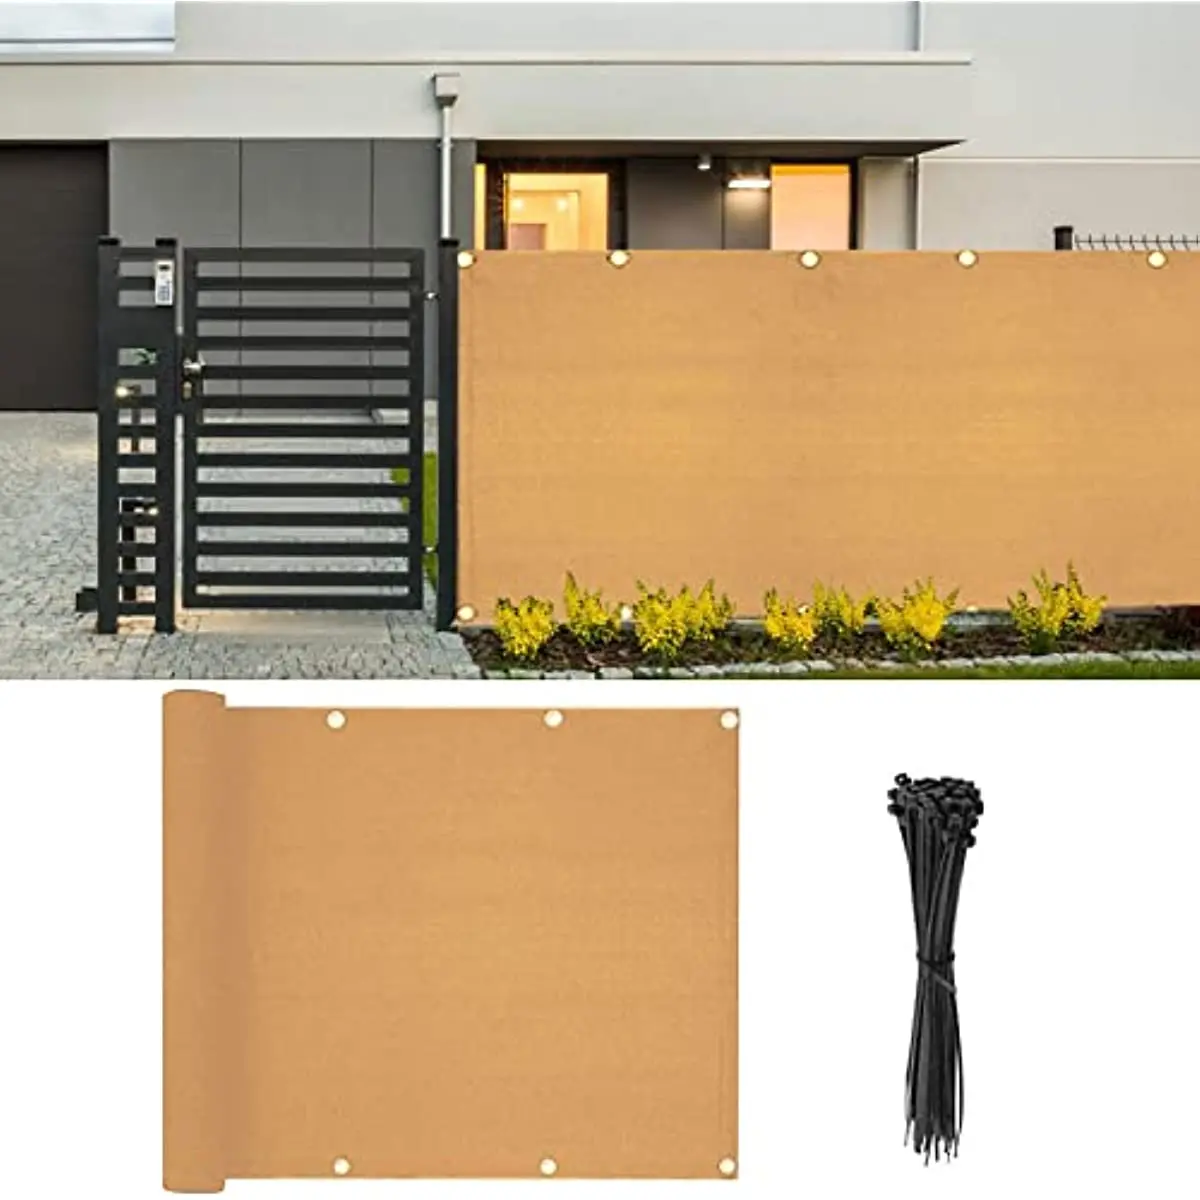 

Beige HDPE Balcony Privacy Screen Fence Cover Outdoor Railin Shield Mesh Sun Shade UV-Resistant Porch Deck Backyard Patio Garden